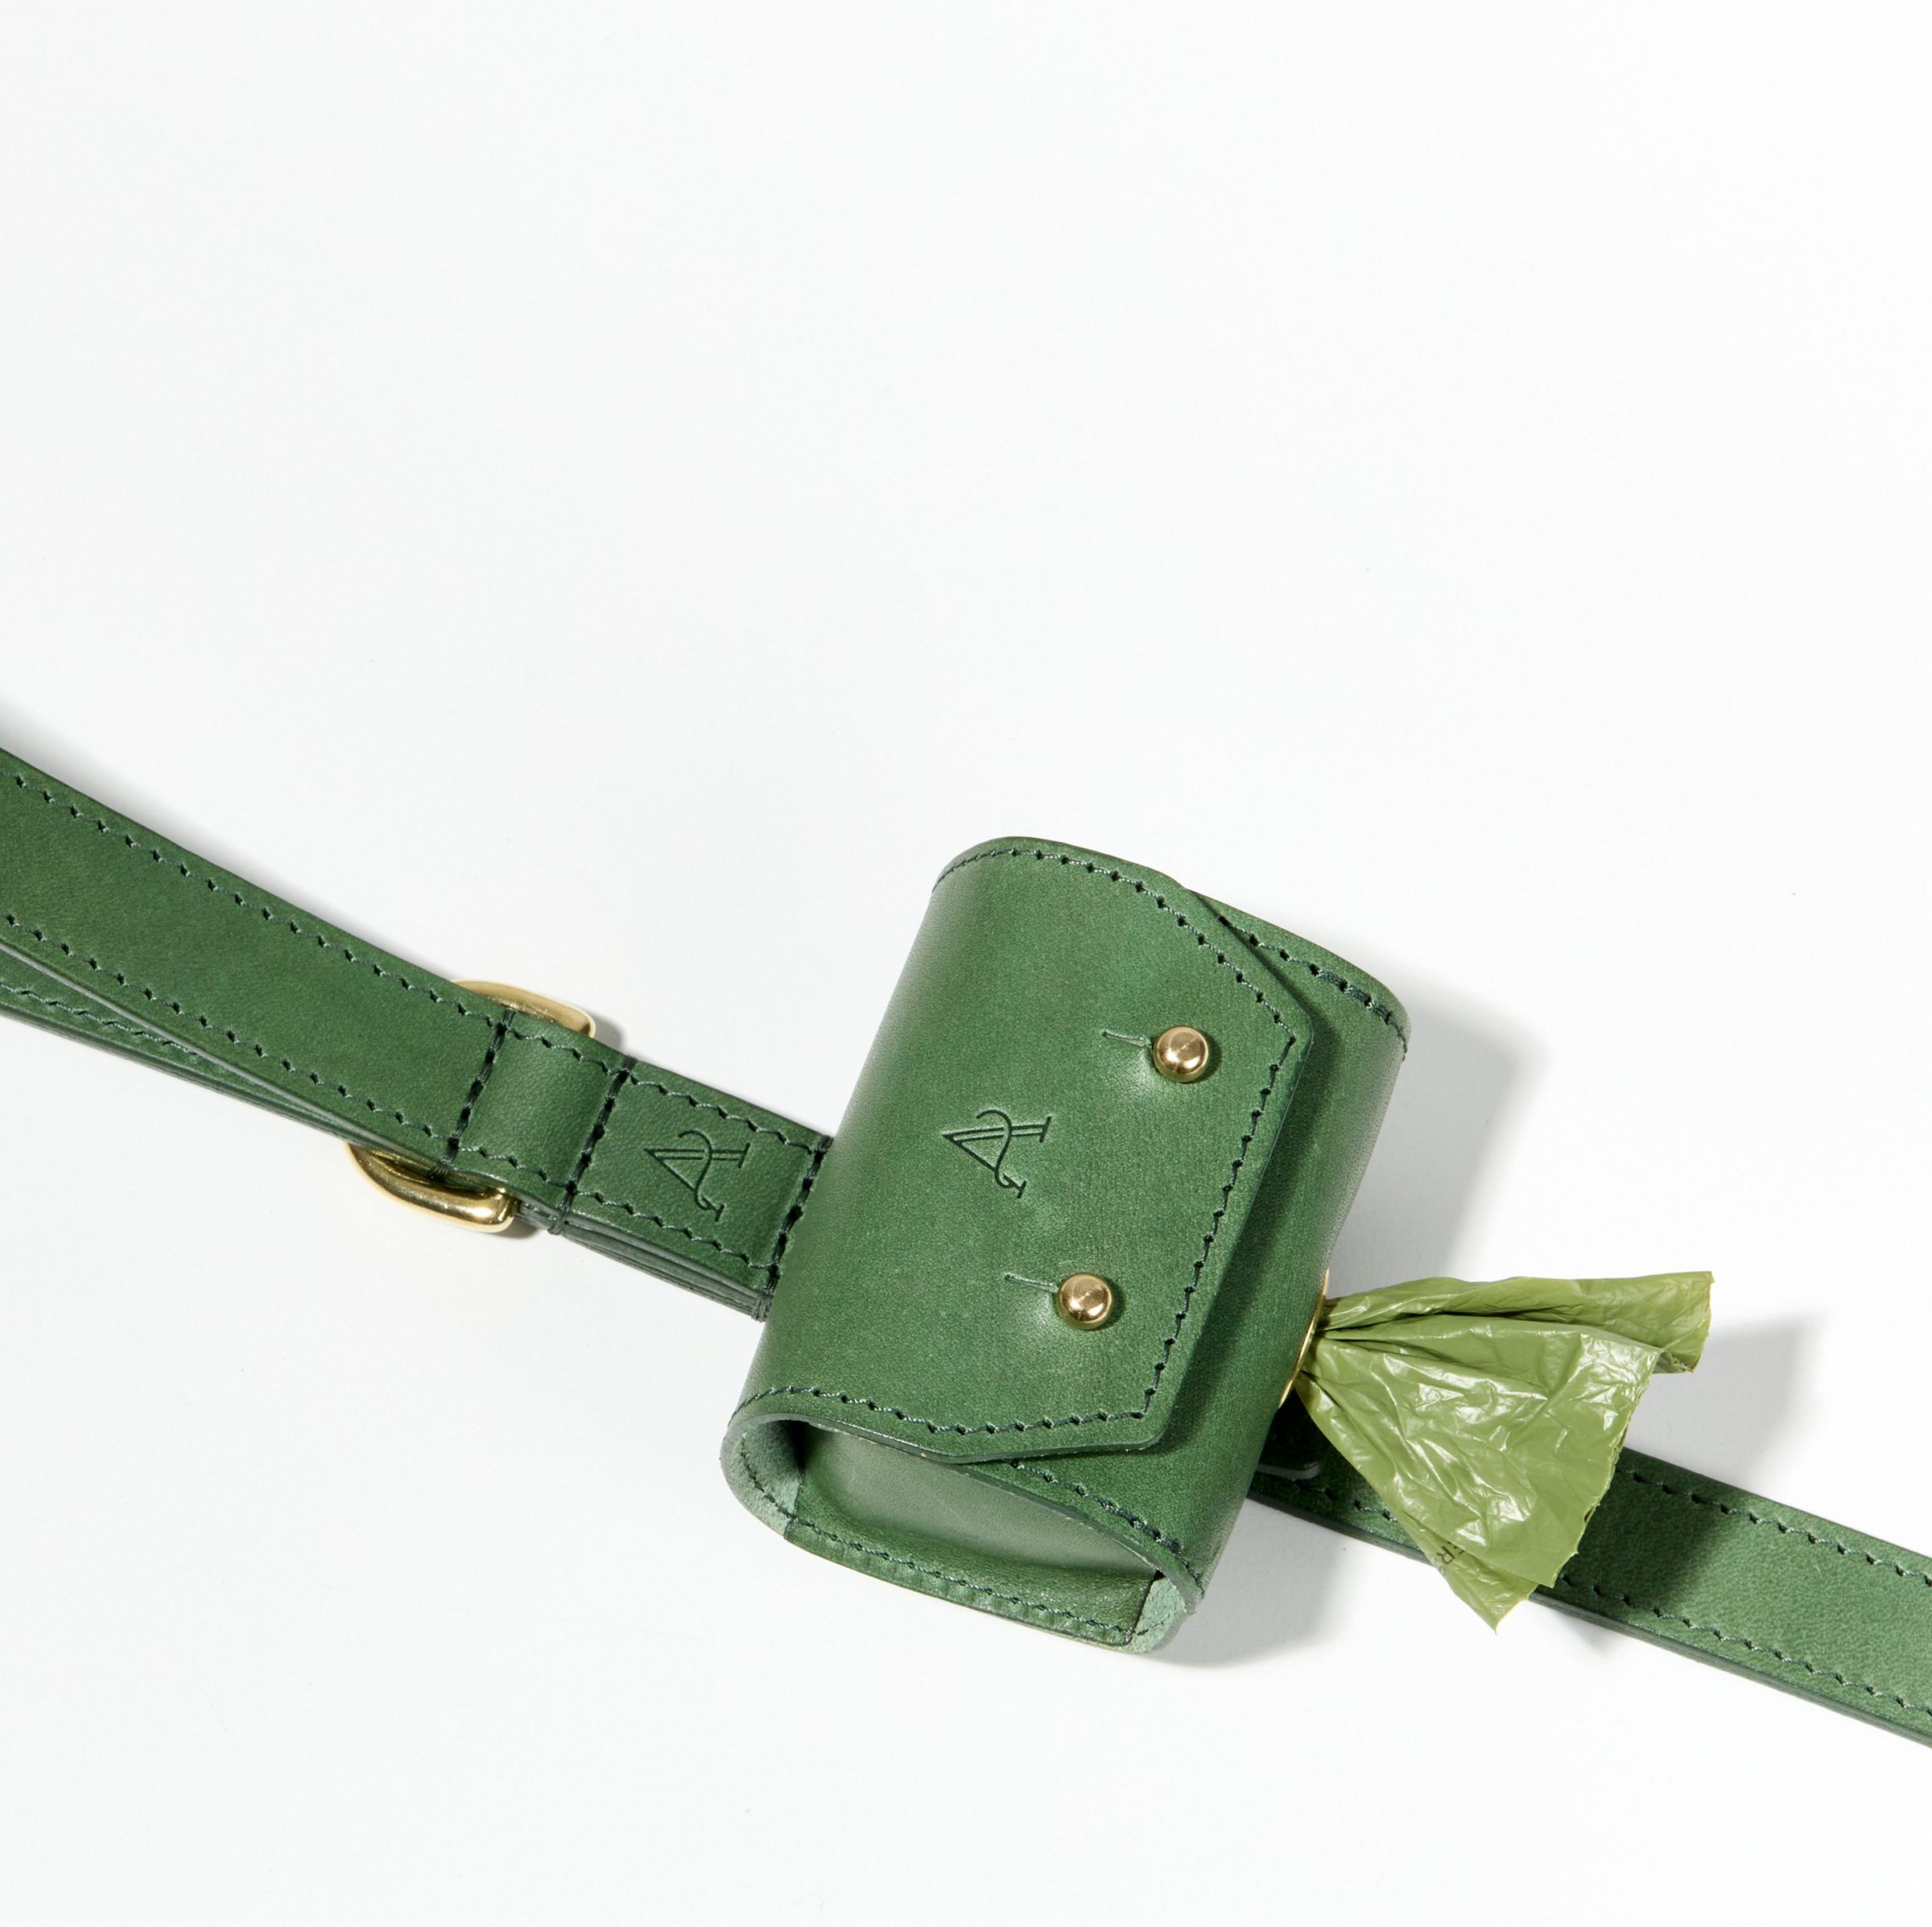 Leather Dog Poo Bag Holder – Green